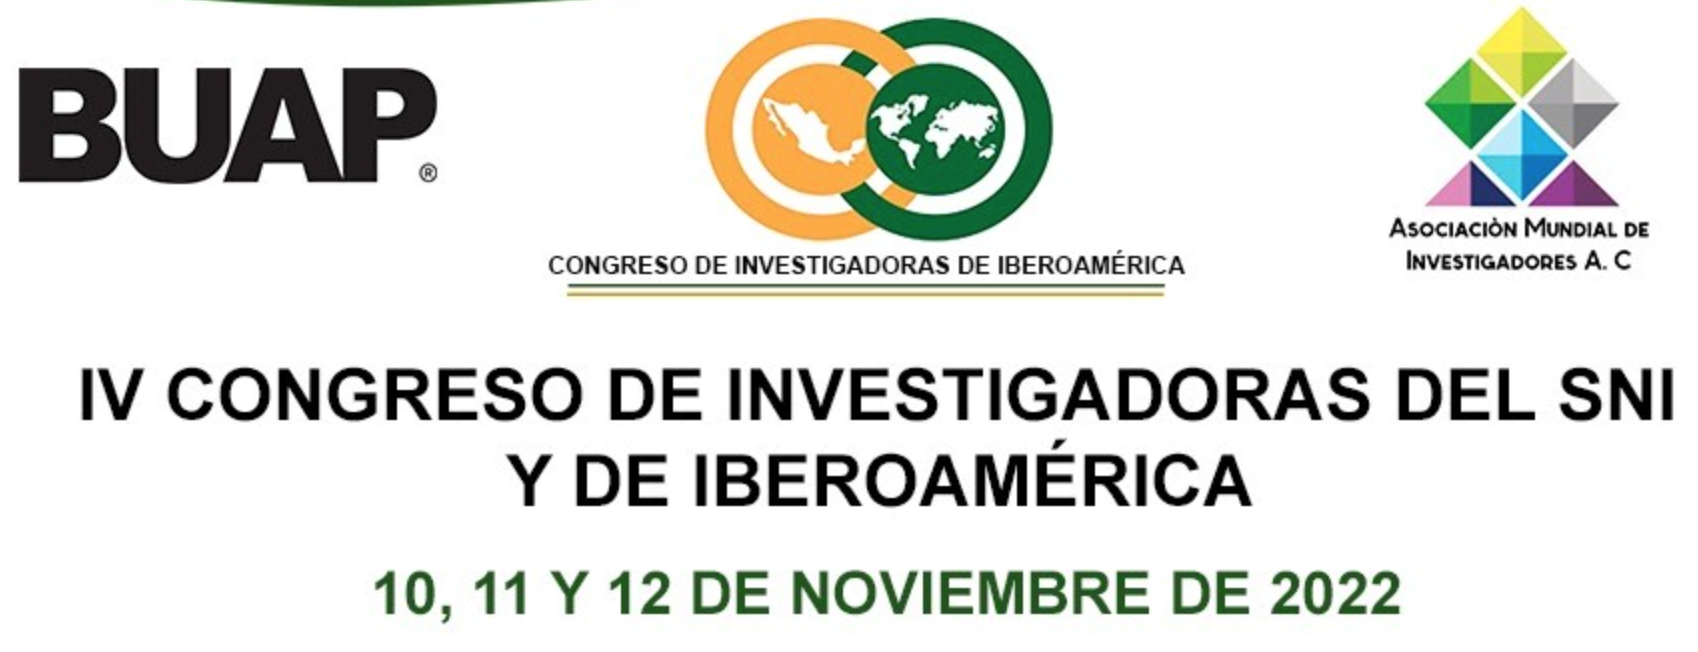 IV Congreso de Investigadoras del SNI y de Iberoámerica